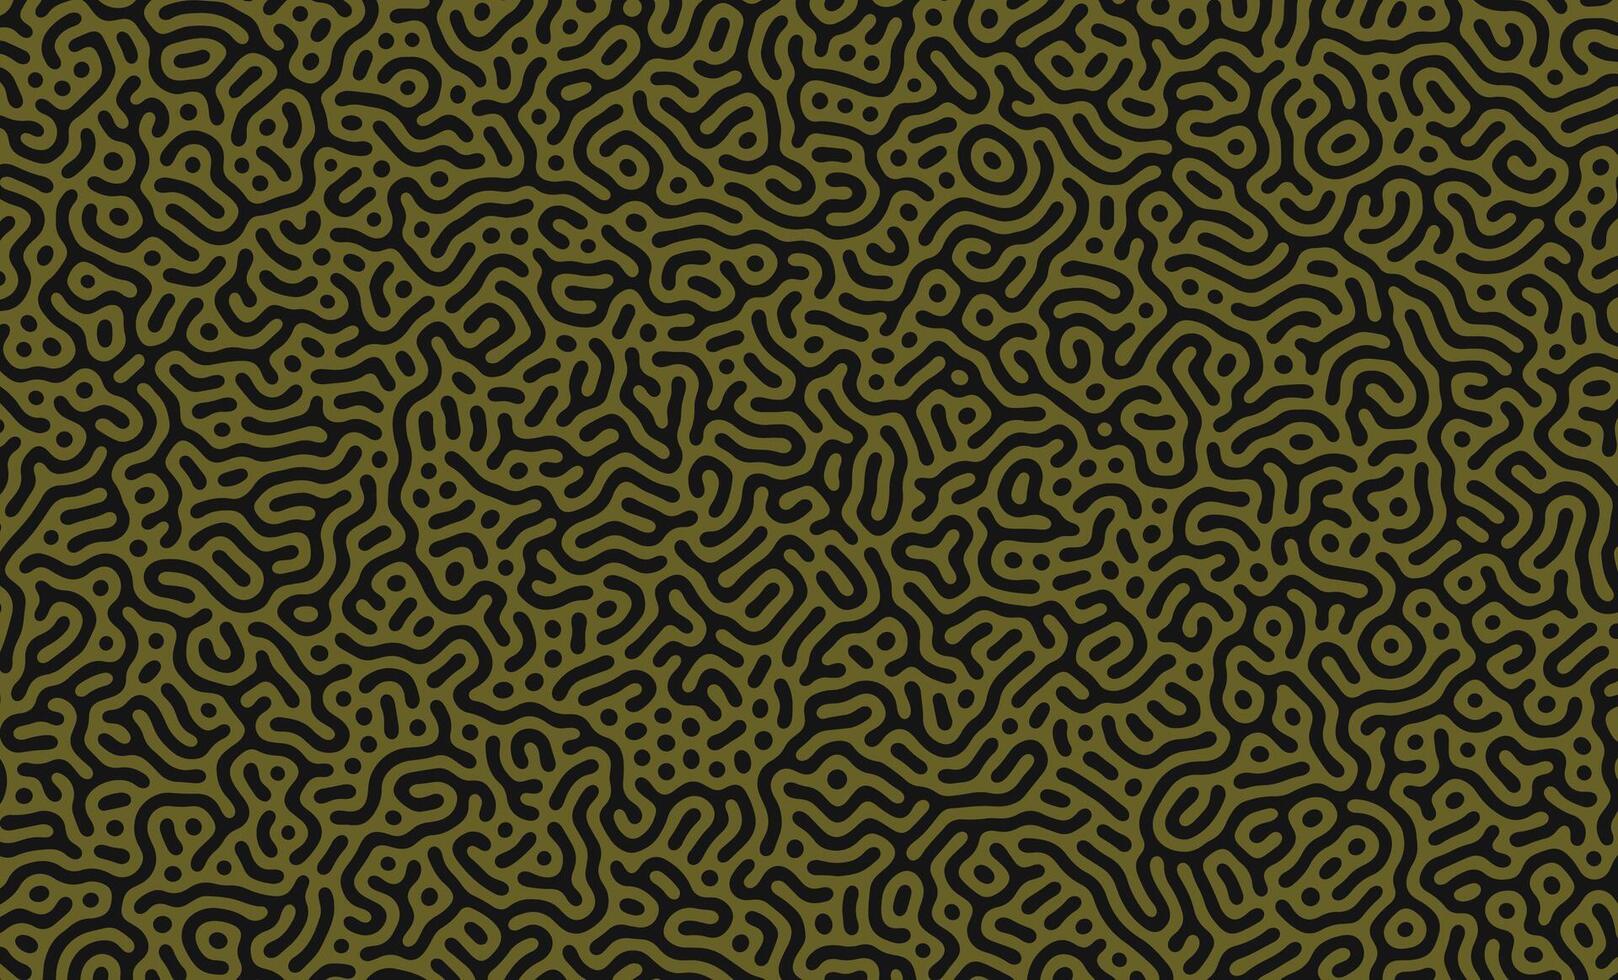 leger groen abstract turing patroon. natuur textuur. etnisch behang vector